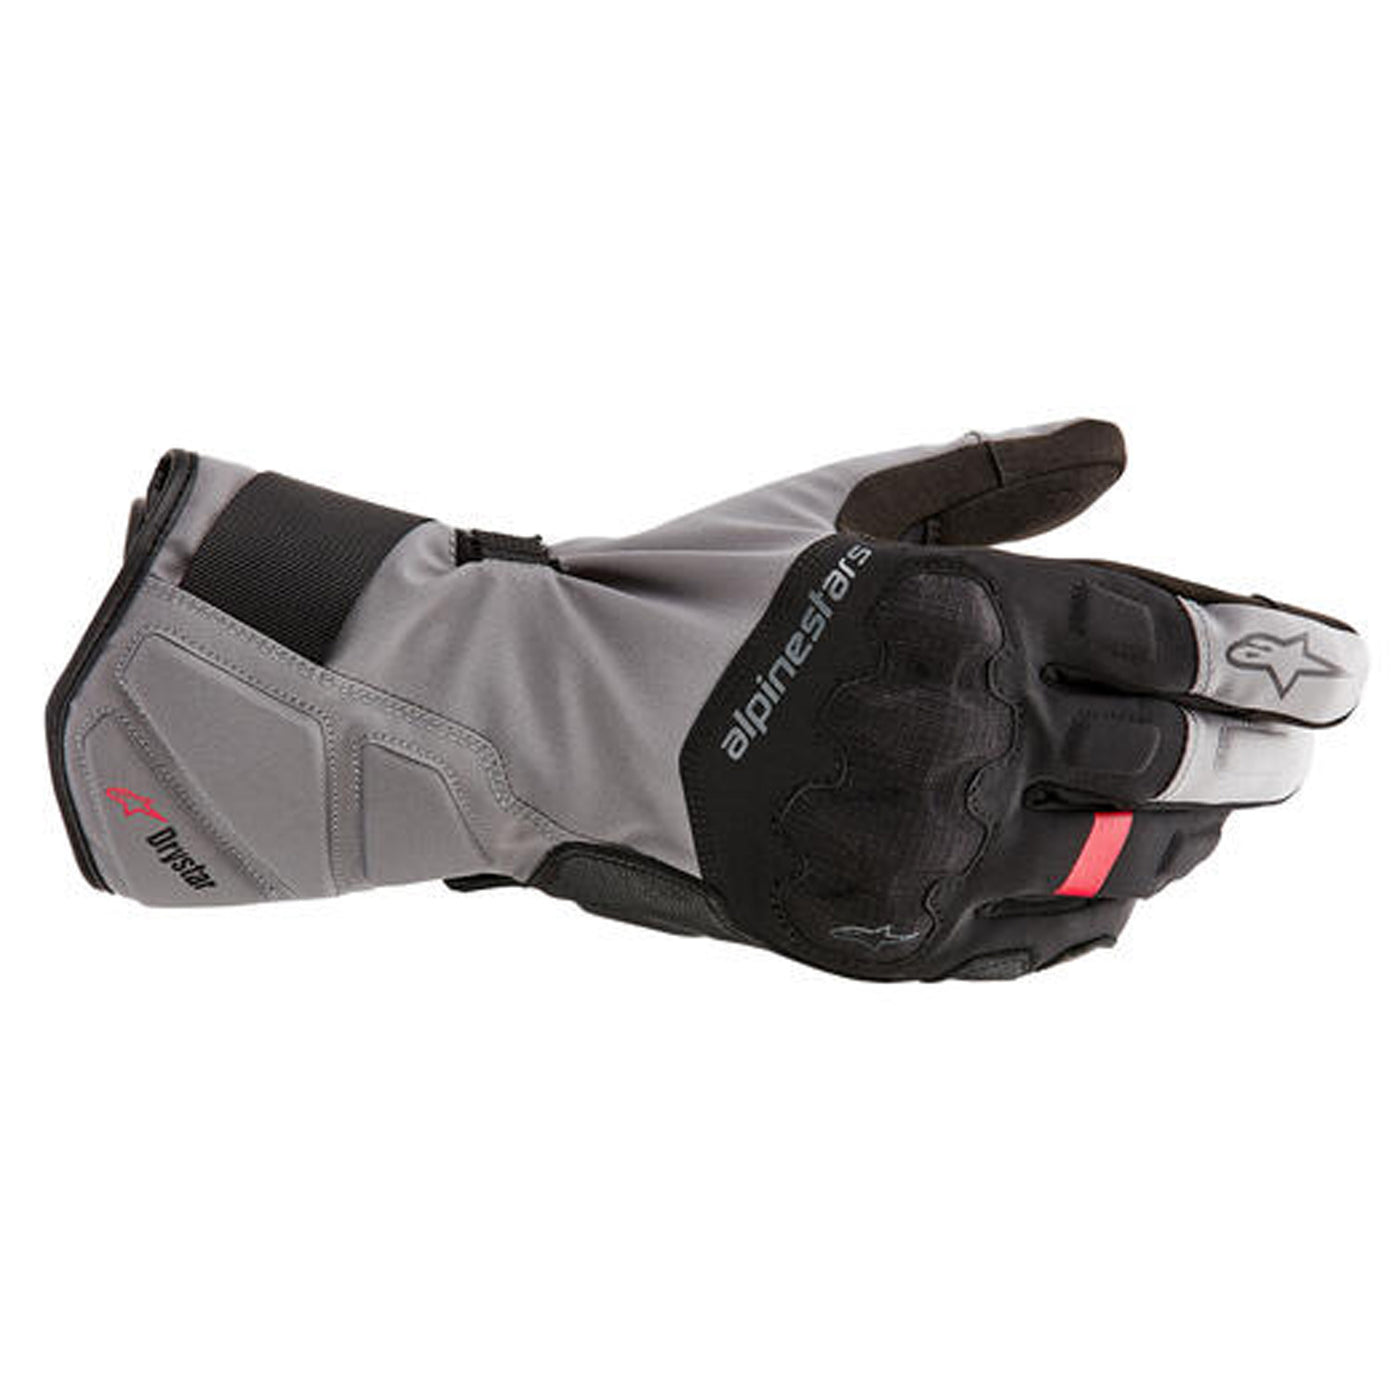 stock photo of Alpinestars Tourer W7 V2 Drystar Gloves